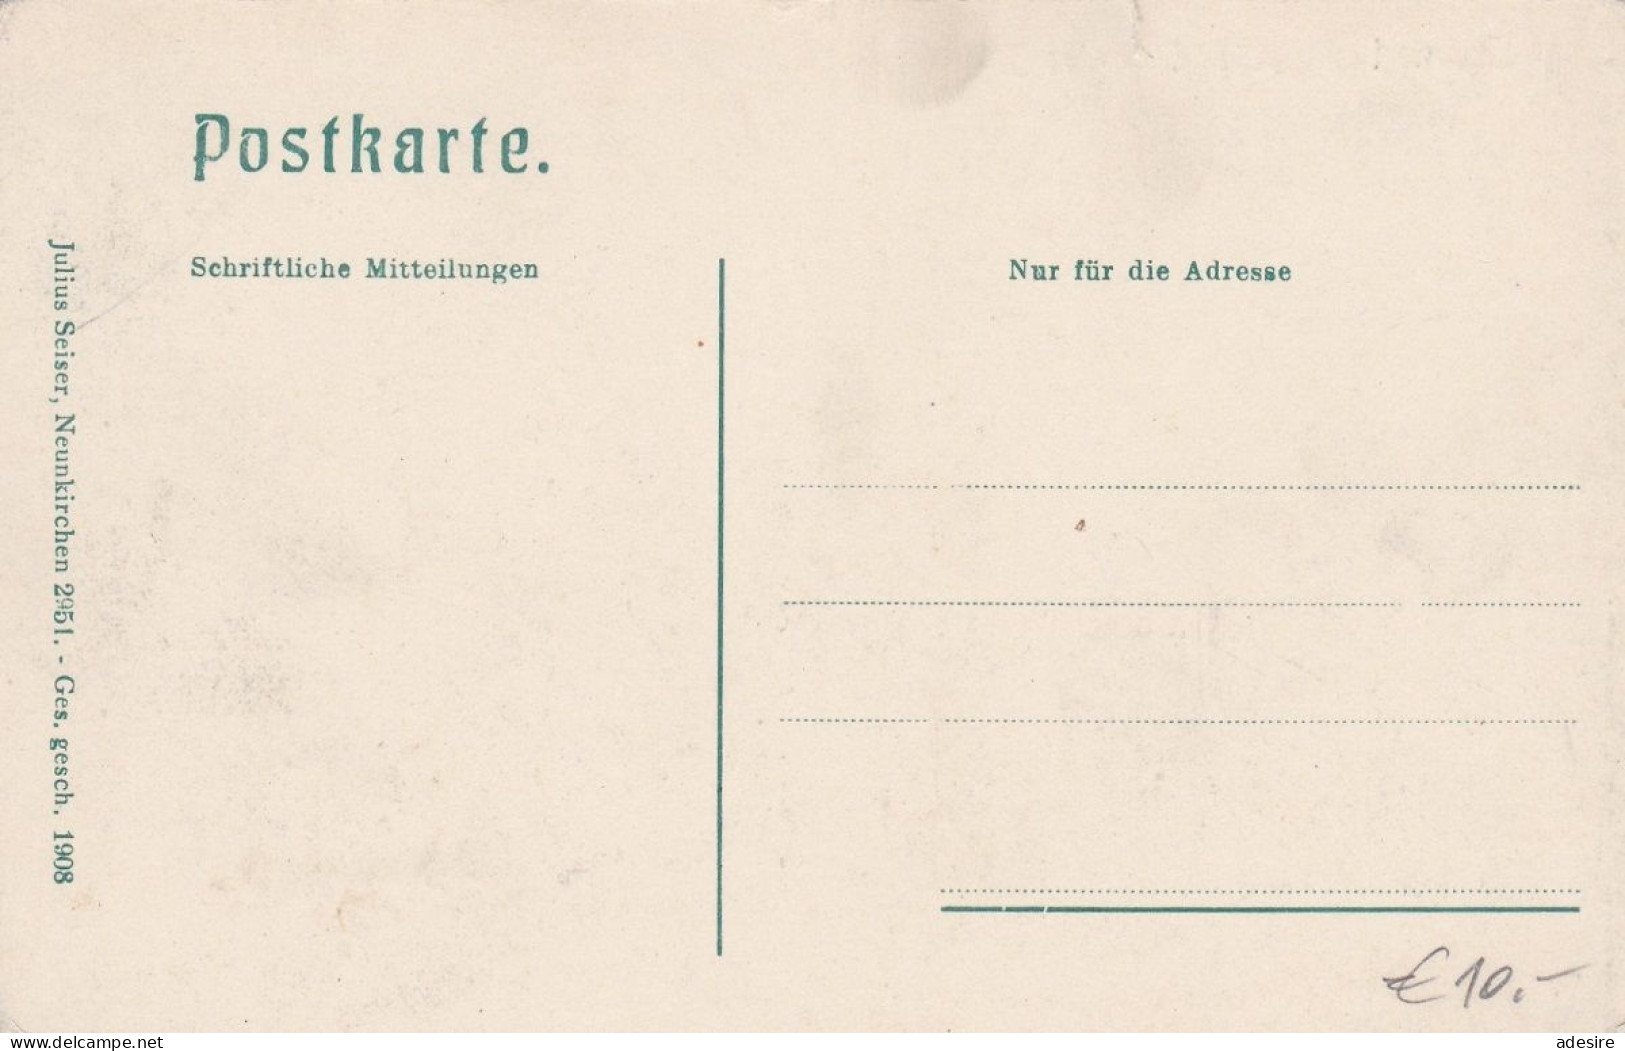 NÖ - SEMMERING Um 1908 - Hotel Erzherzog Johann, Verlag Julius Seiser Neunkirchen ... - Semmering